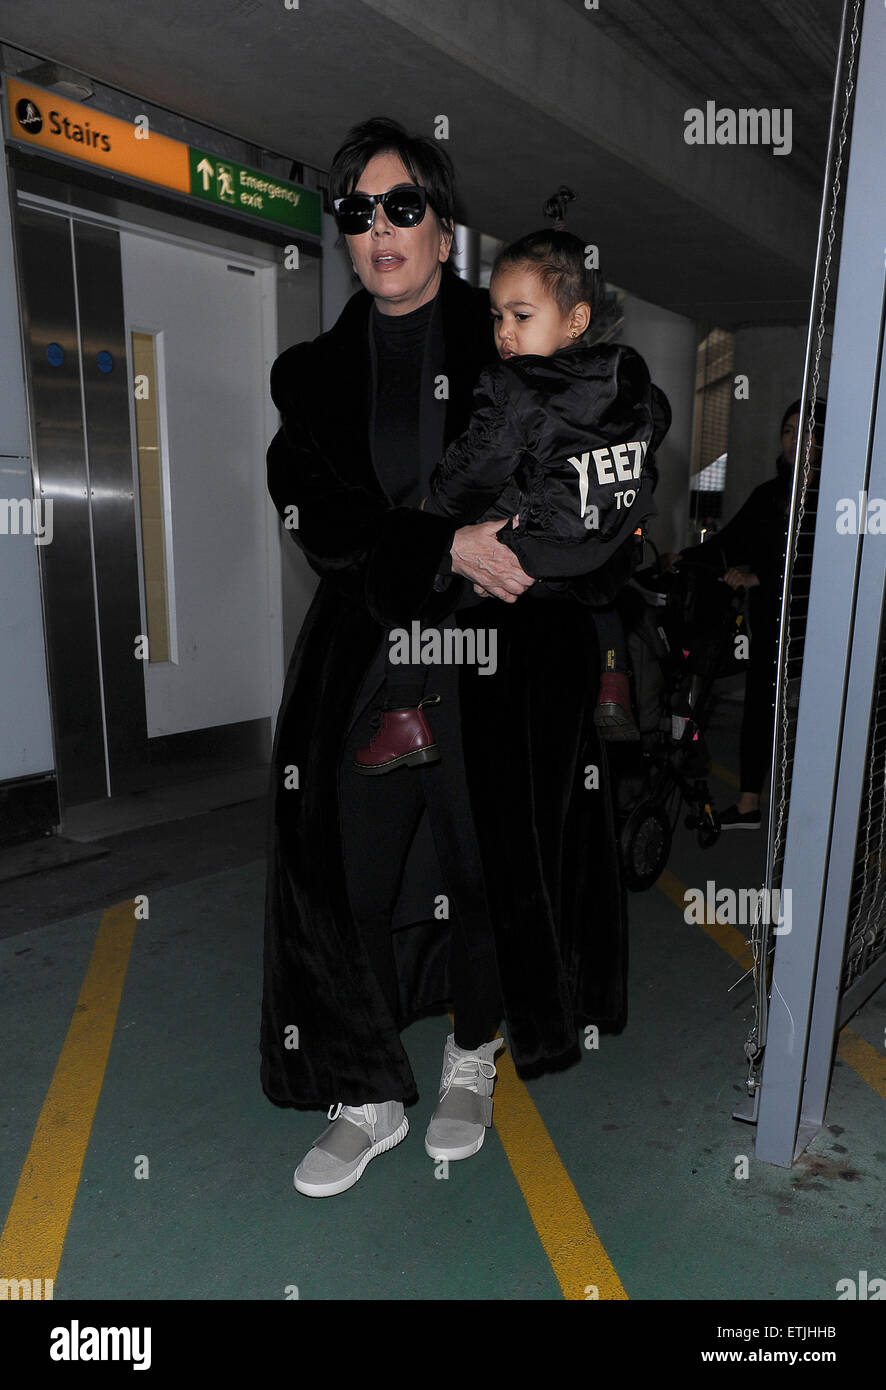 Kris Jenner, vistiendo un par de Kanye West Yeezy Adidas x 750 Boost, llega al aeropuerto de Heathrow llevando bebé North West, quien llevaba una chaqueta de bombardero Yeezus Tour' en